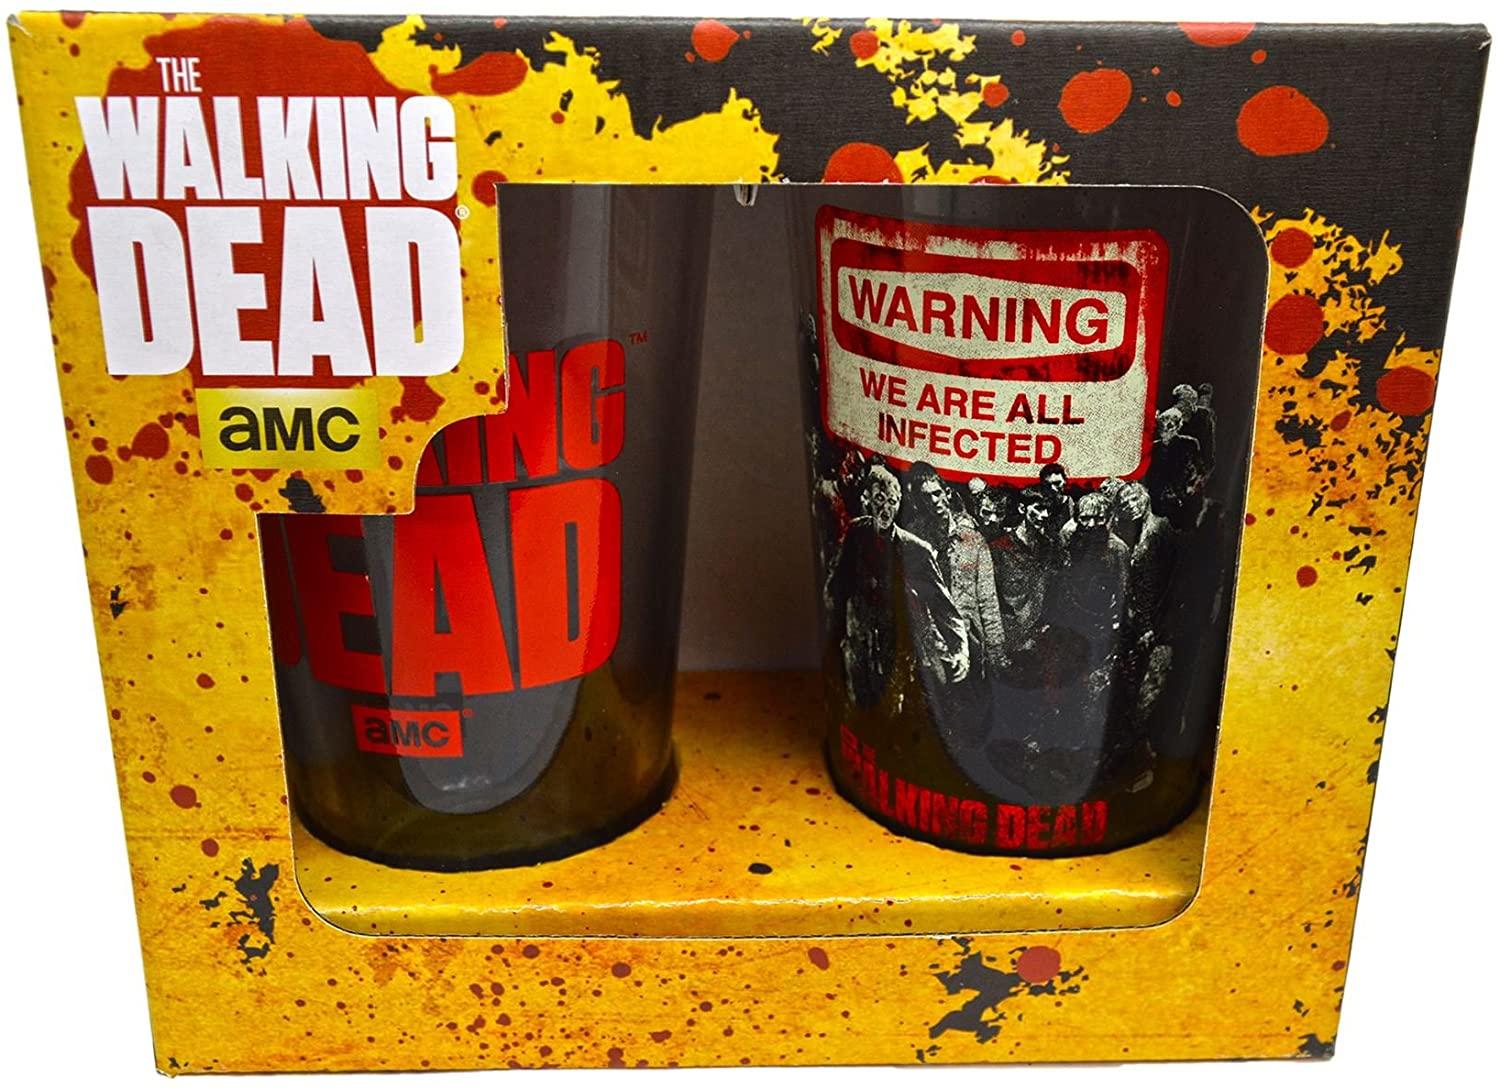 Walking Dead Warning Pint Glass